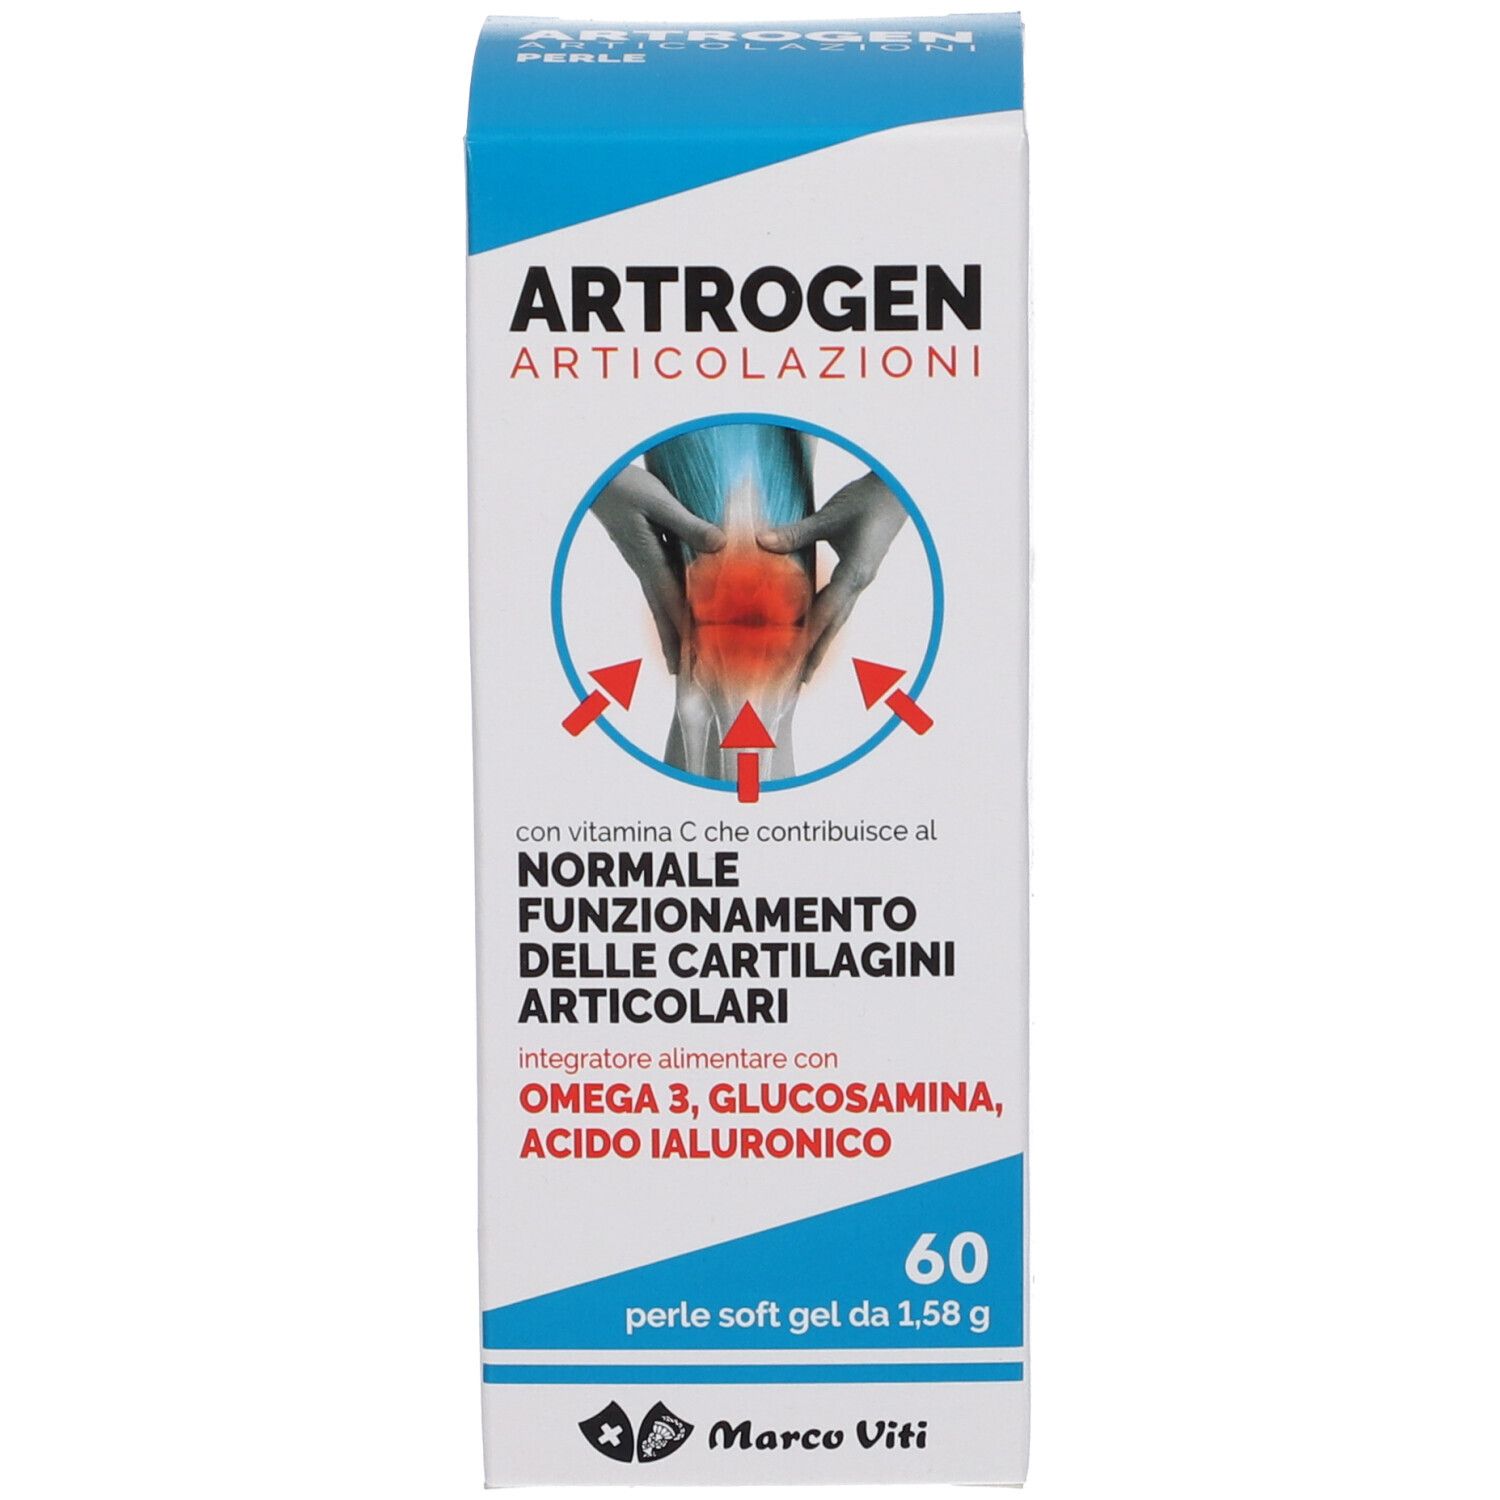 Artrogen Articolazioni perle